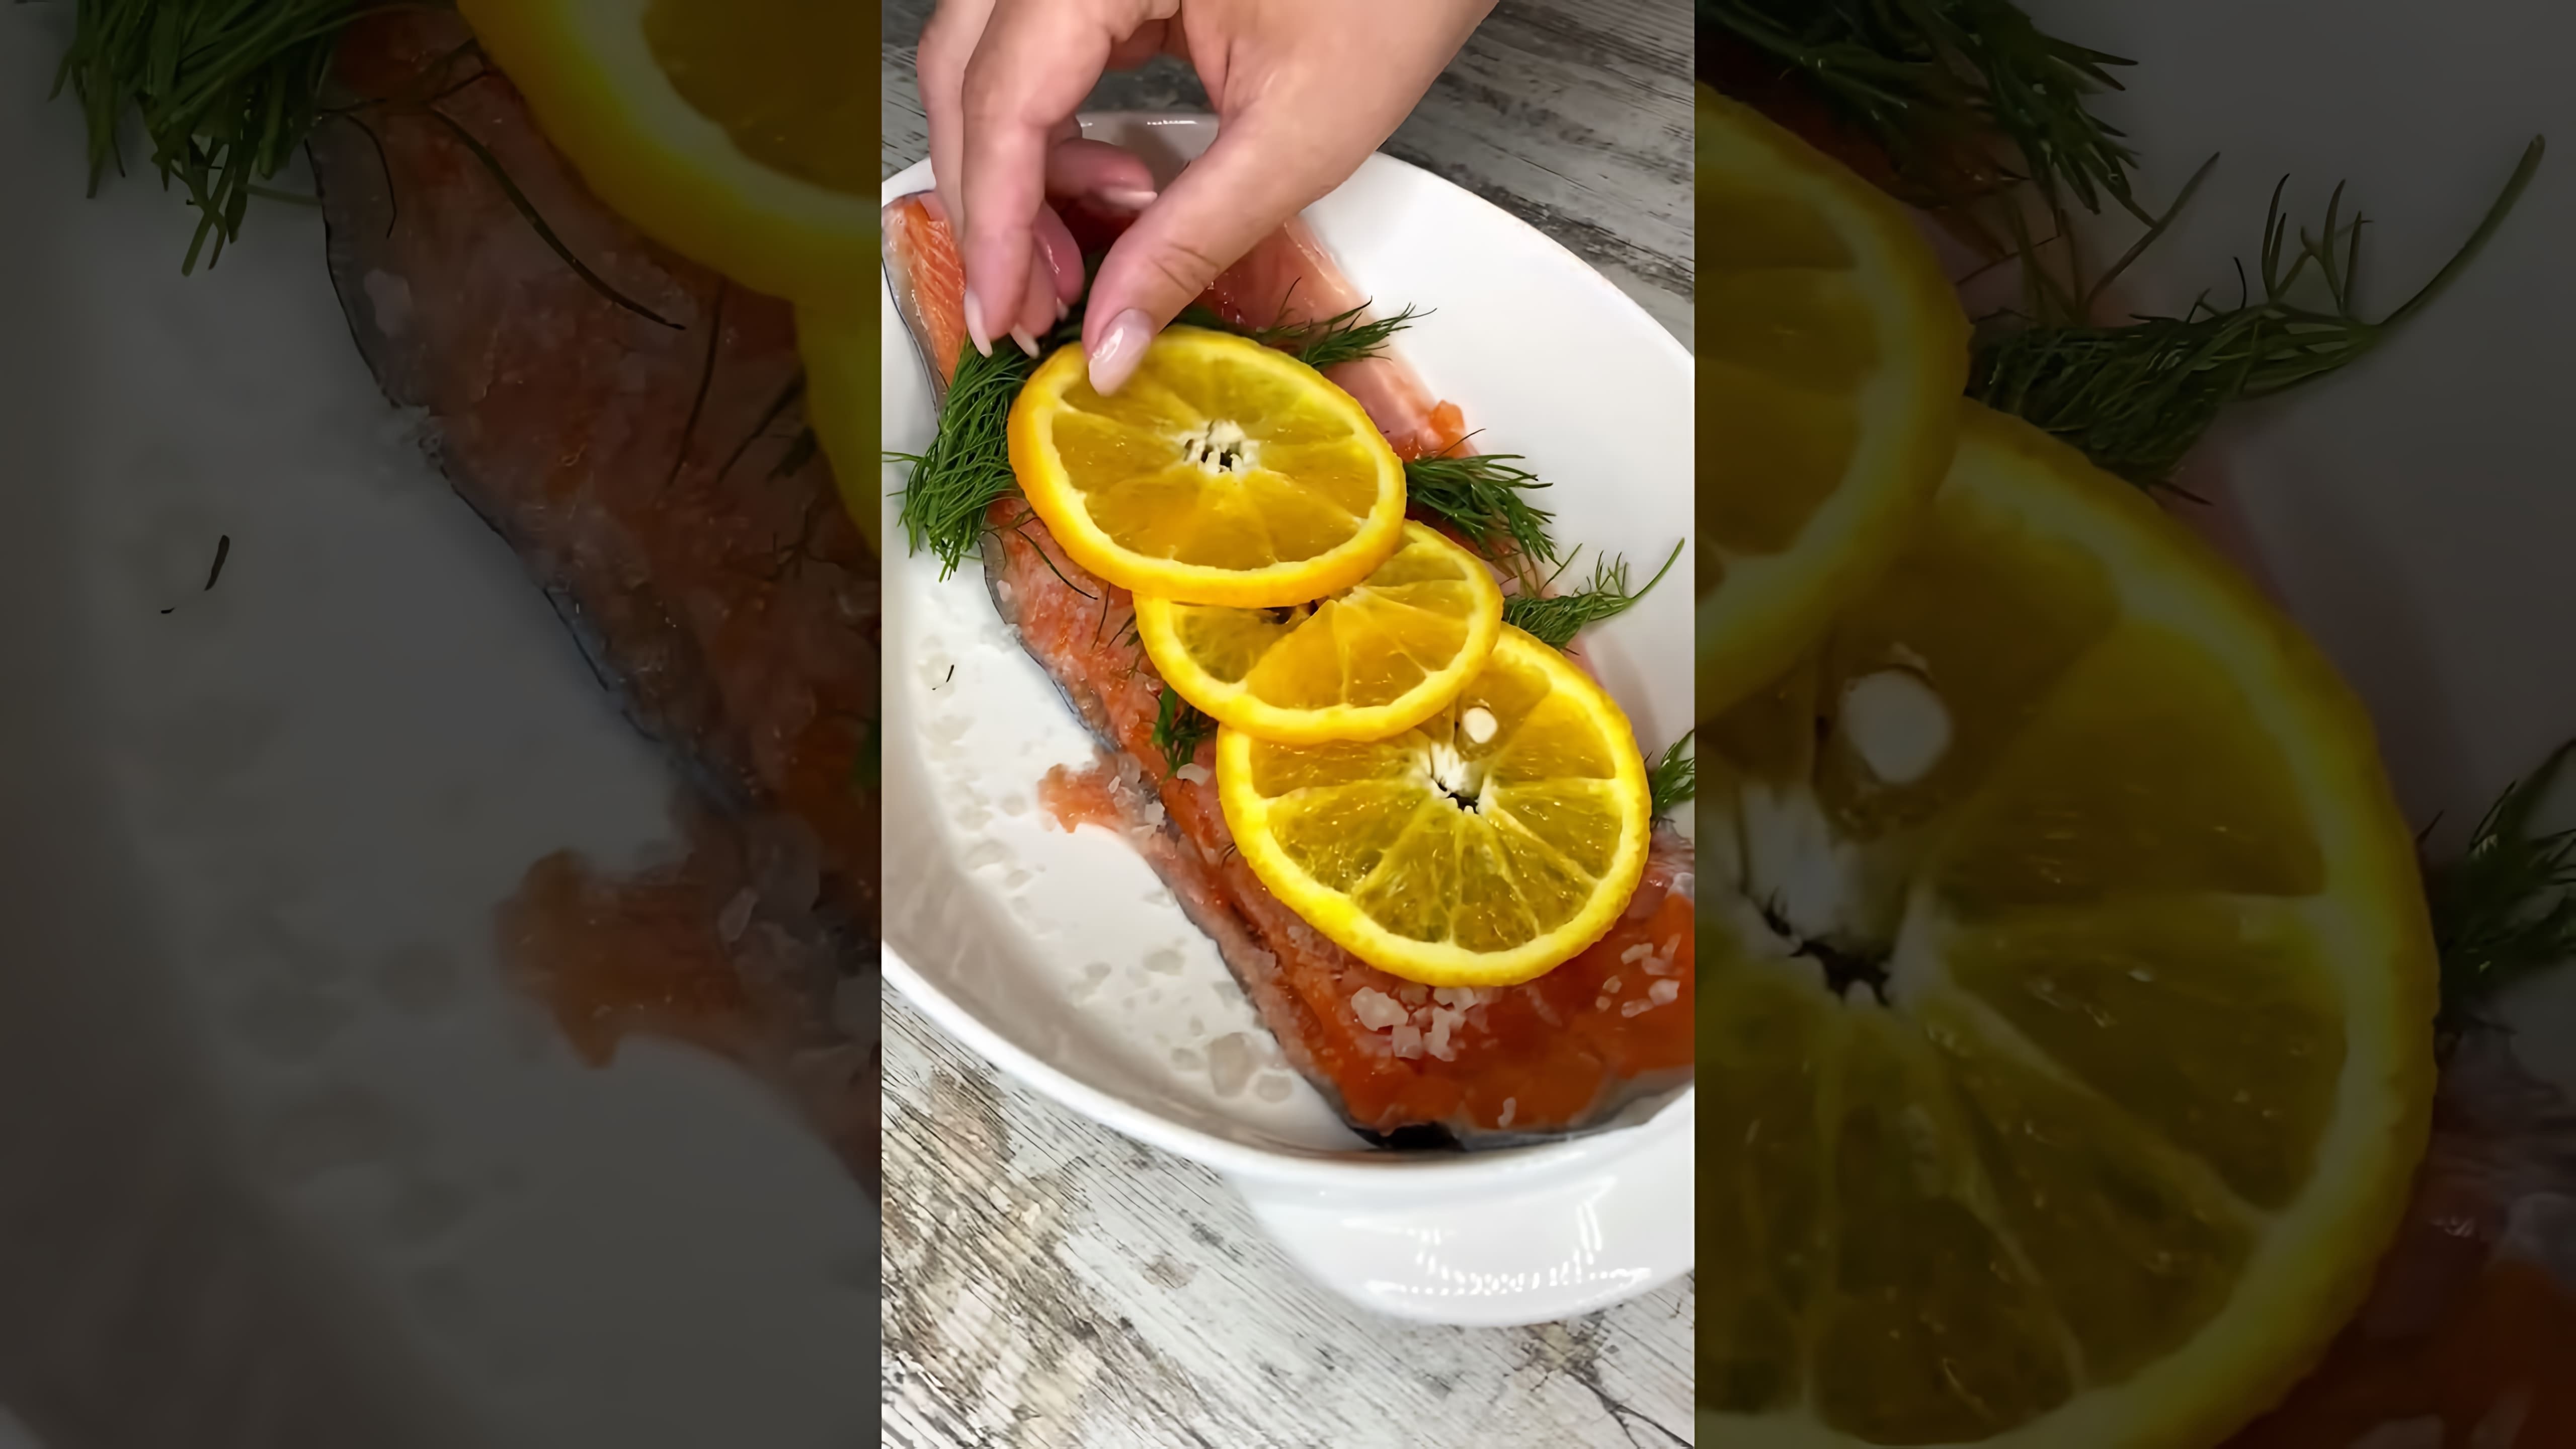 "Самый вкусный рецепт форели!" - это видео-ролик, который предлагает вам приготовить вкусное и полезное блюдо из форели